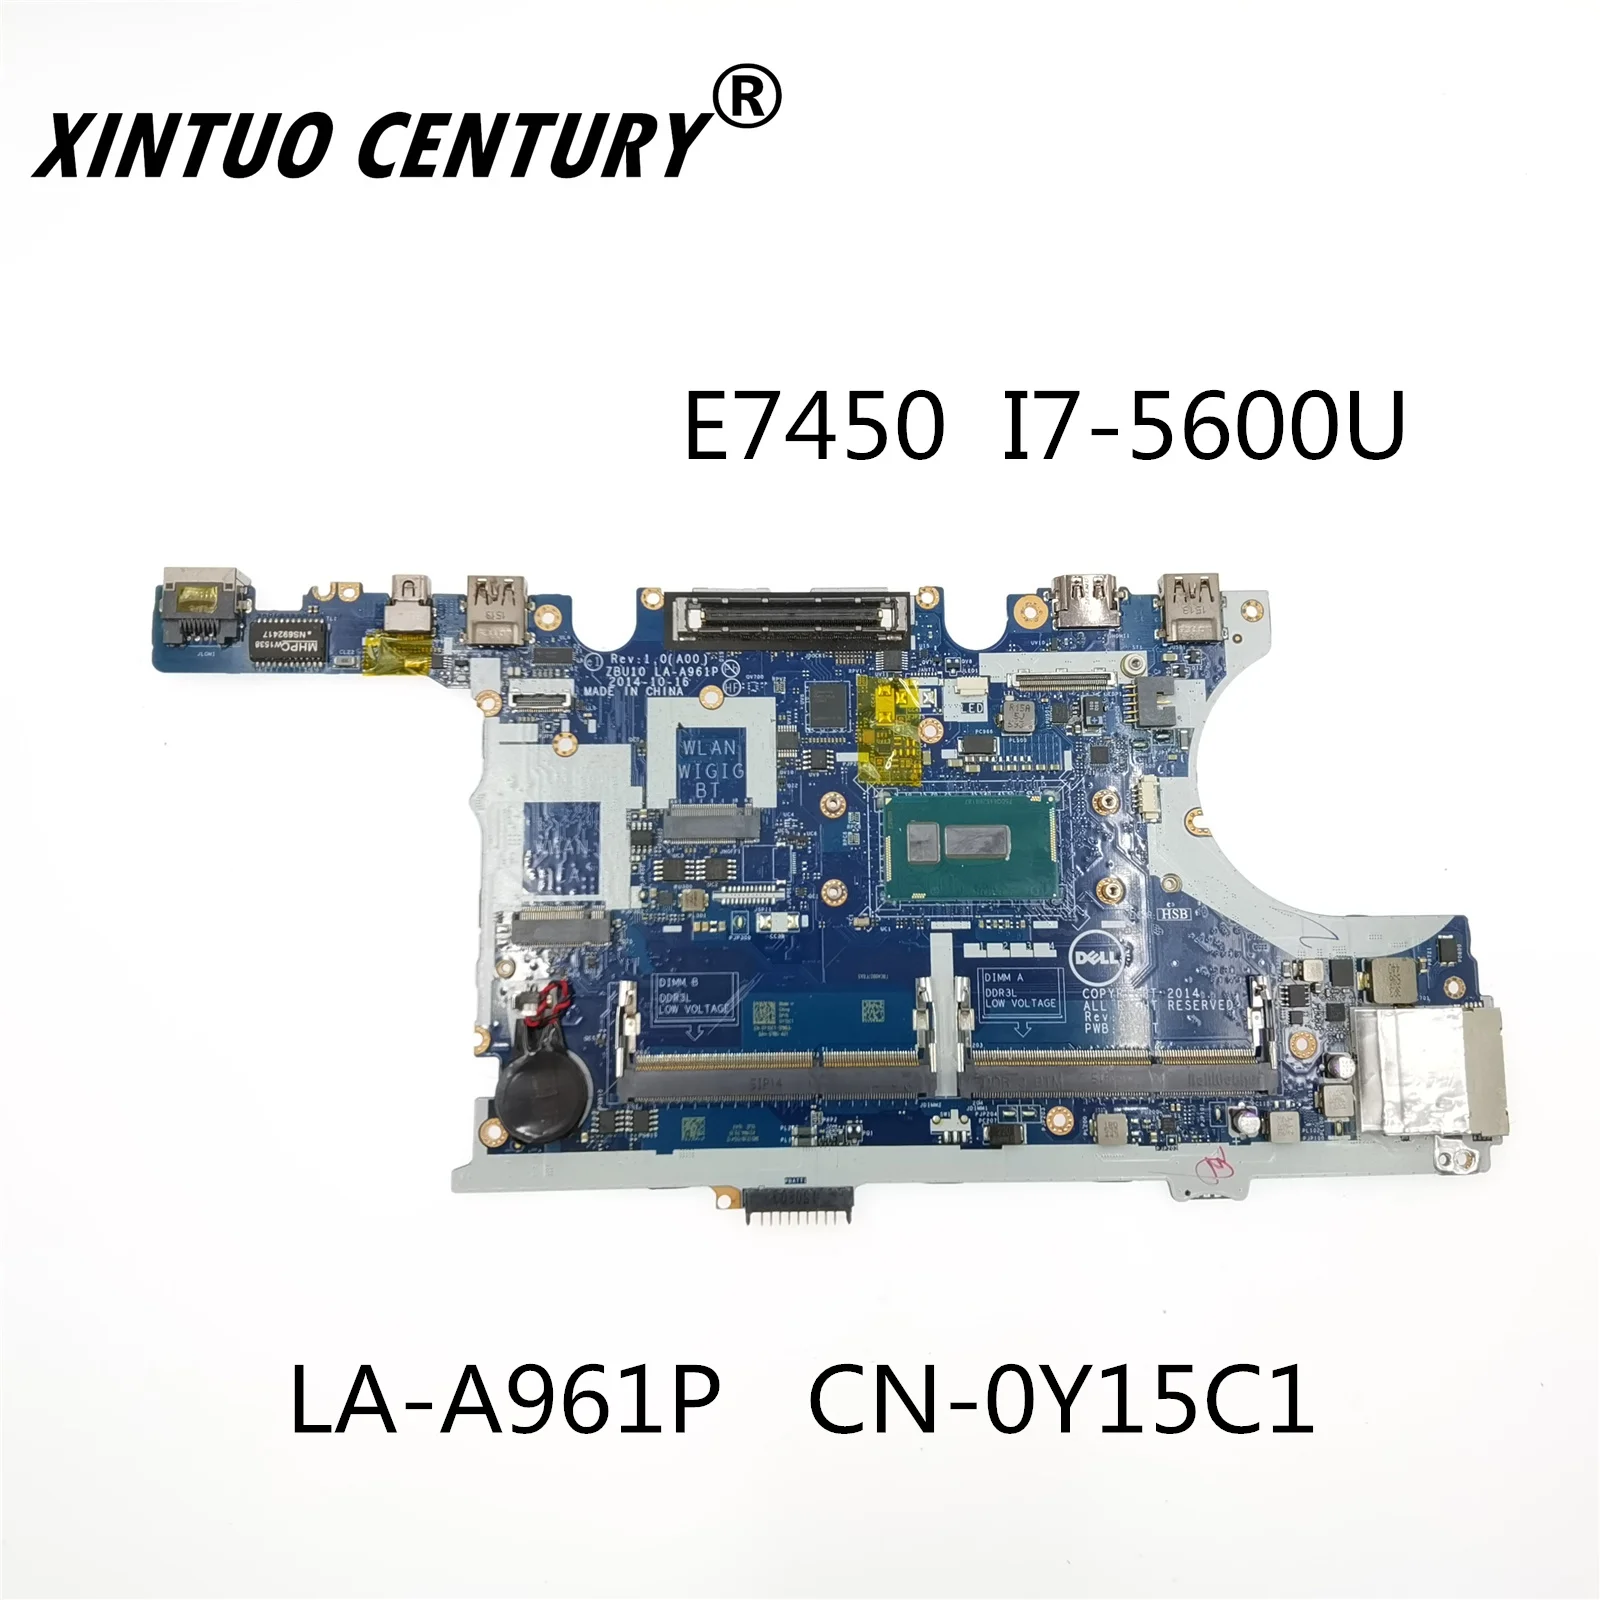 

CN-0Y15C1 0Y15C1 Y15C1 For DELL Latitude E7450 Laptop Motherboard ZBU11 LA-A961P SR23V I7-5600U CPU